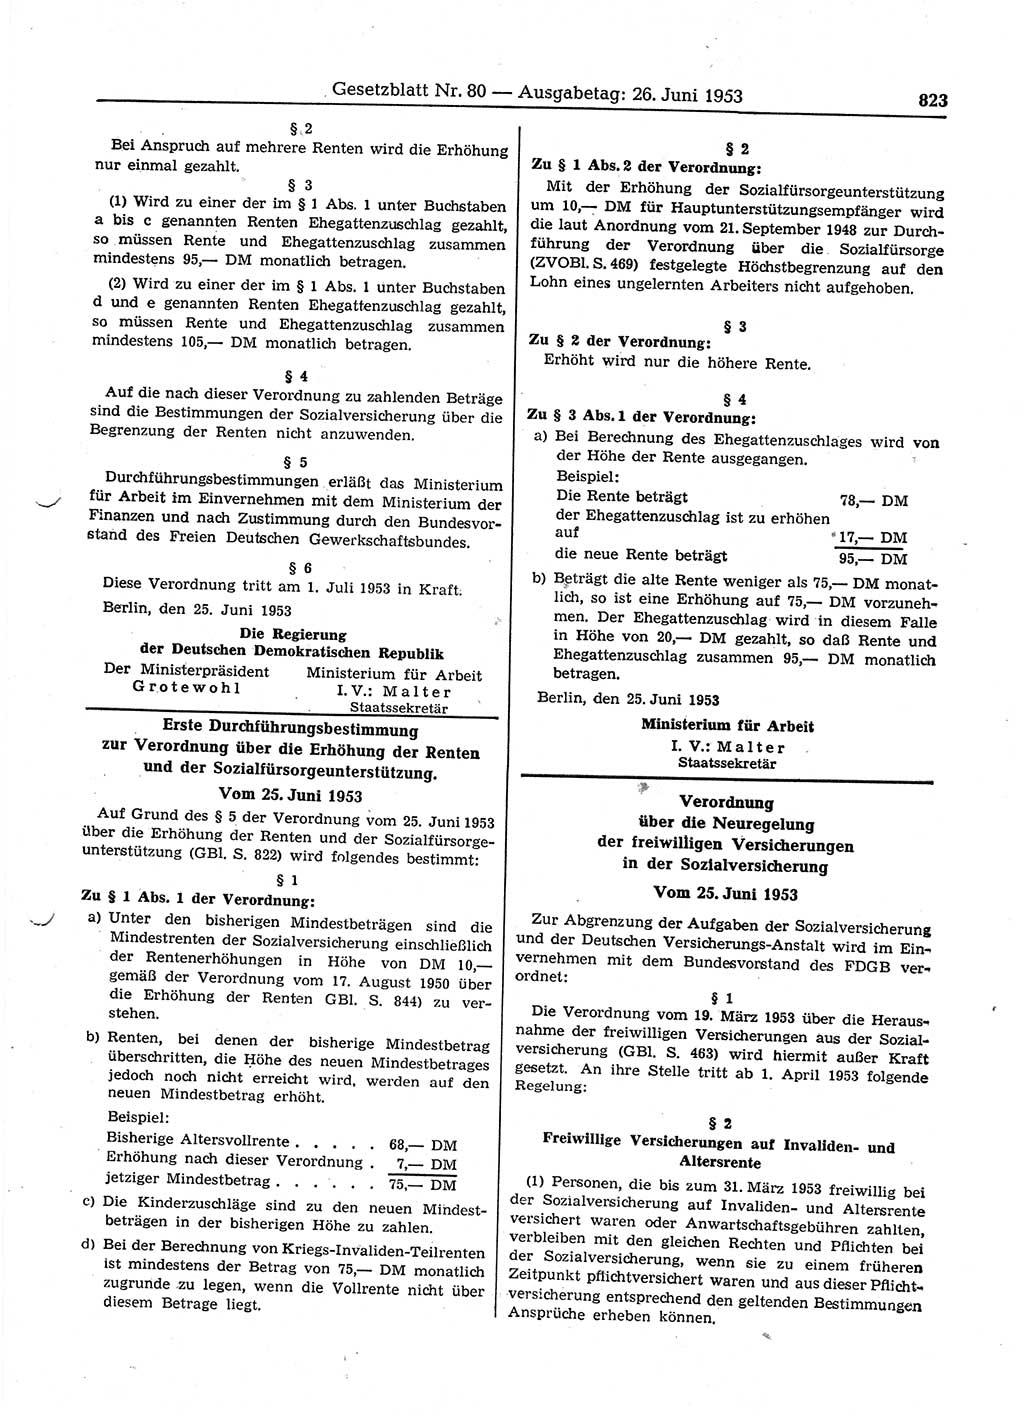 Gesetzblatt (GBl.) der Deutschen Demokratischen Republik (DDR) 1953, Seite 823 (GBl. DDR 1953, S. 823)